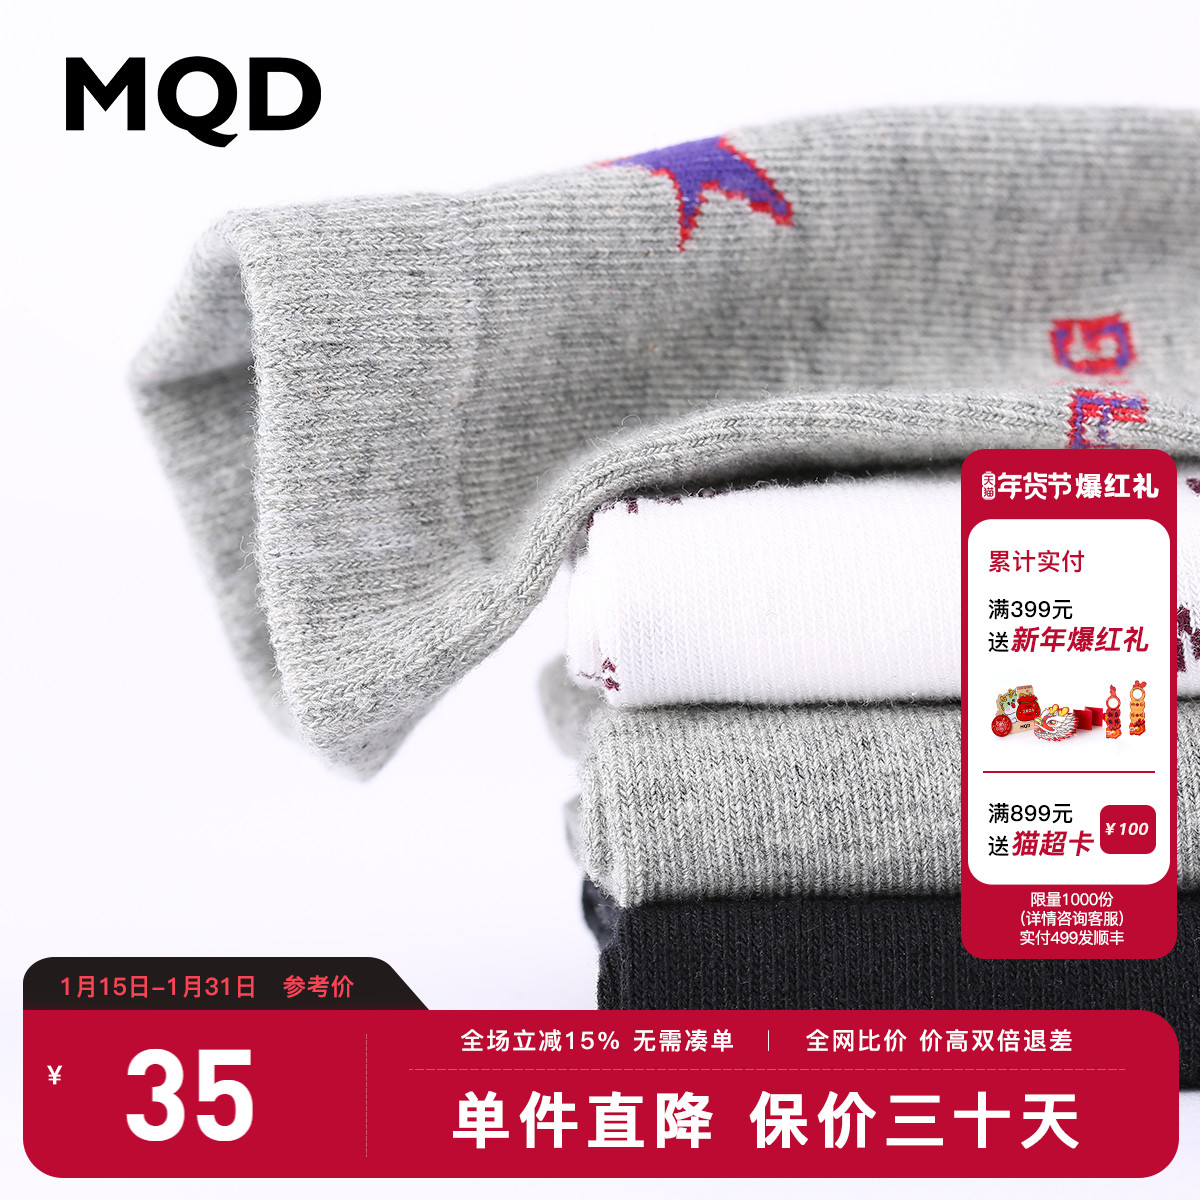 【3双装】MQD童装男童袜子秋冬新款韩版保暖透气儿童中筒袜运动袜